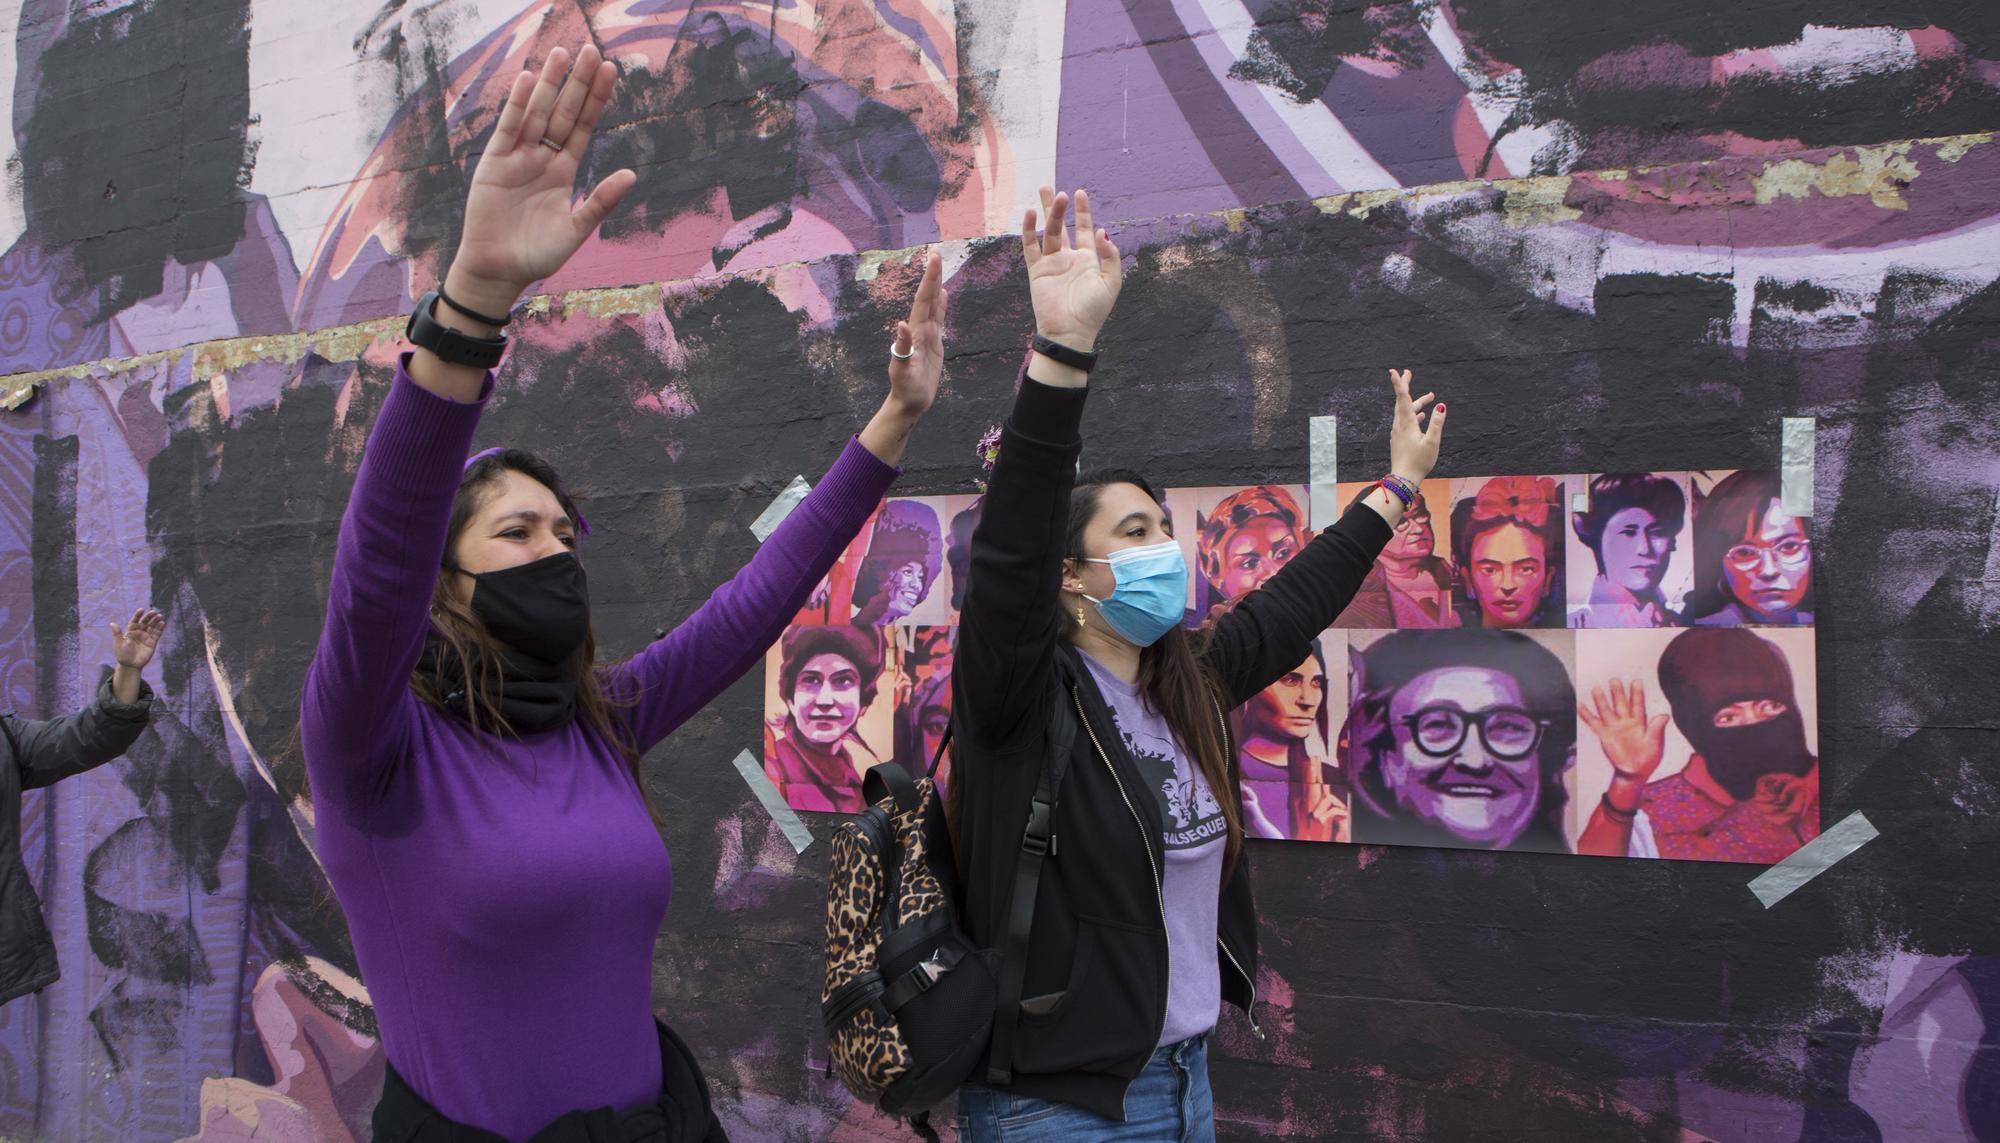 concentración frente al mural feminista vandalizado el 8M en Madrid - 2